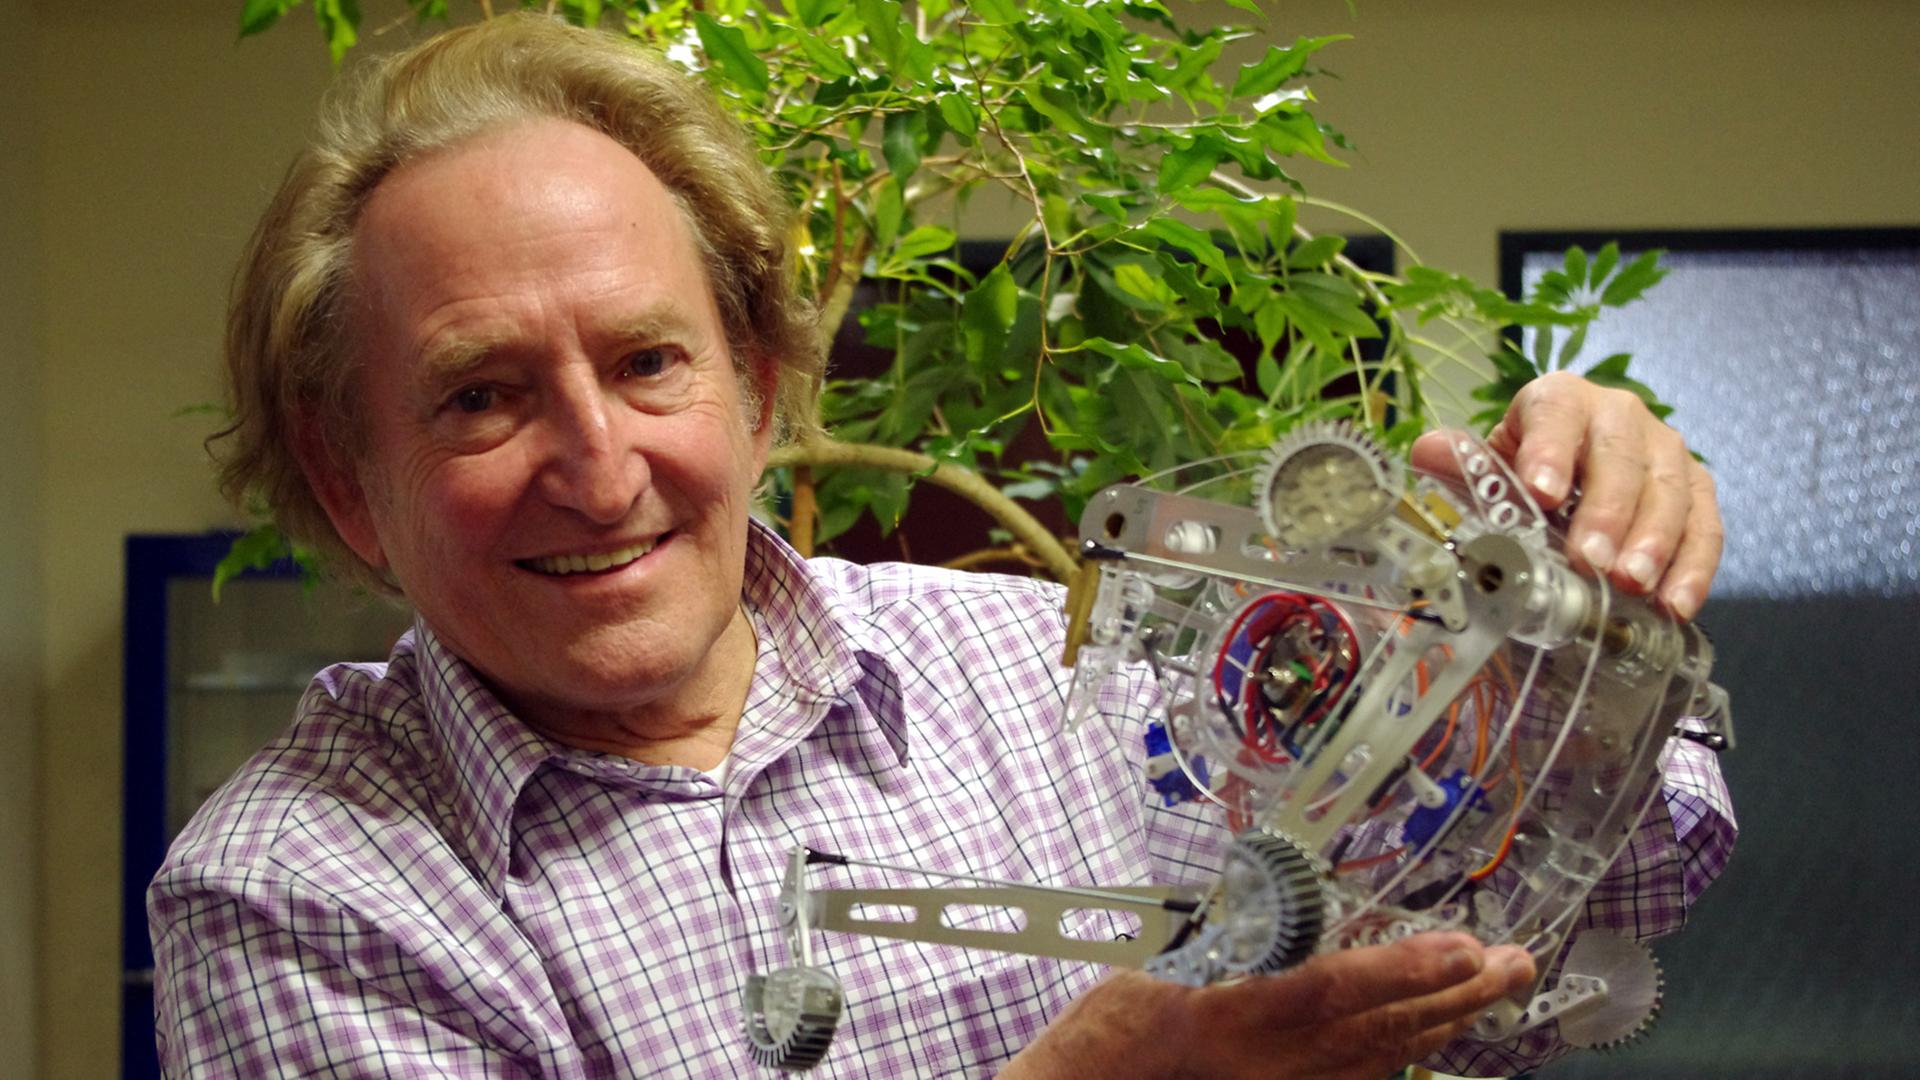 Der Forscher Ingo Rechenberg mit der Roboter-Spinne Tabbot - eine Spinne brachte den Forscher Ingo Rechenberg auf die Idee für den Roboter.